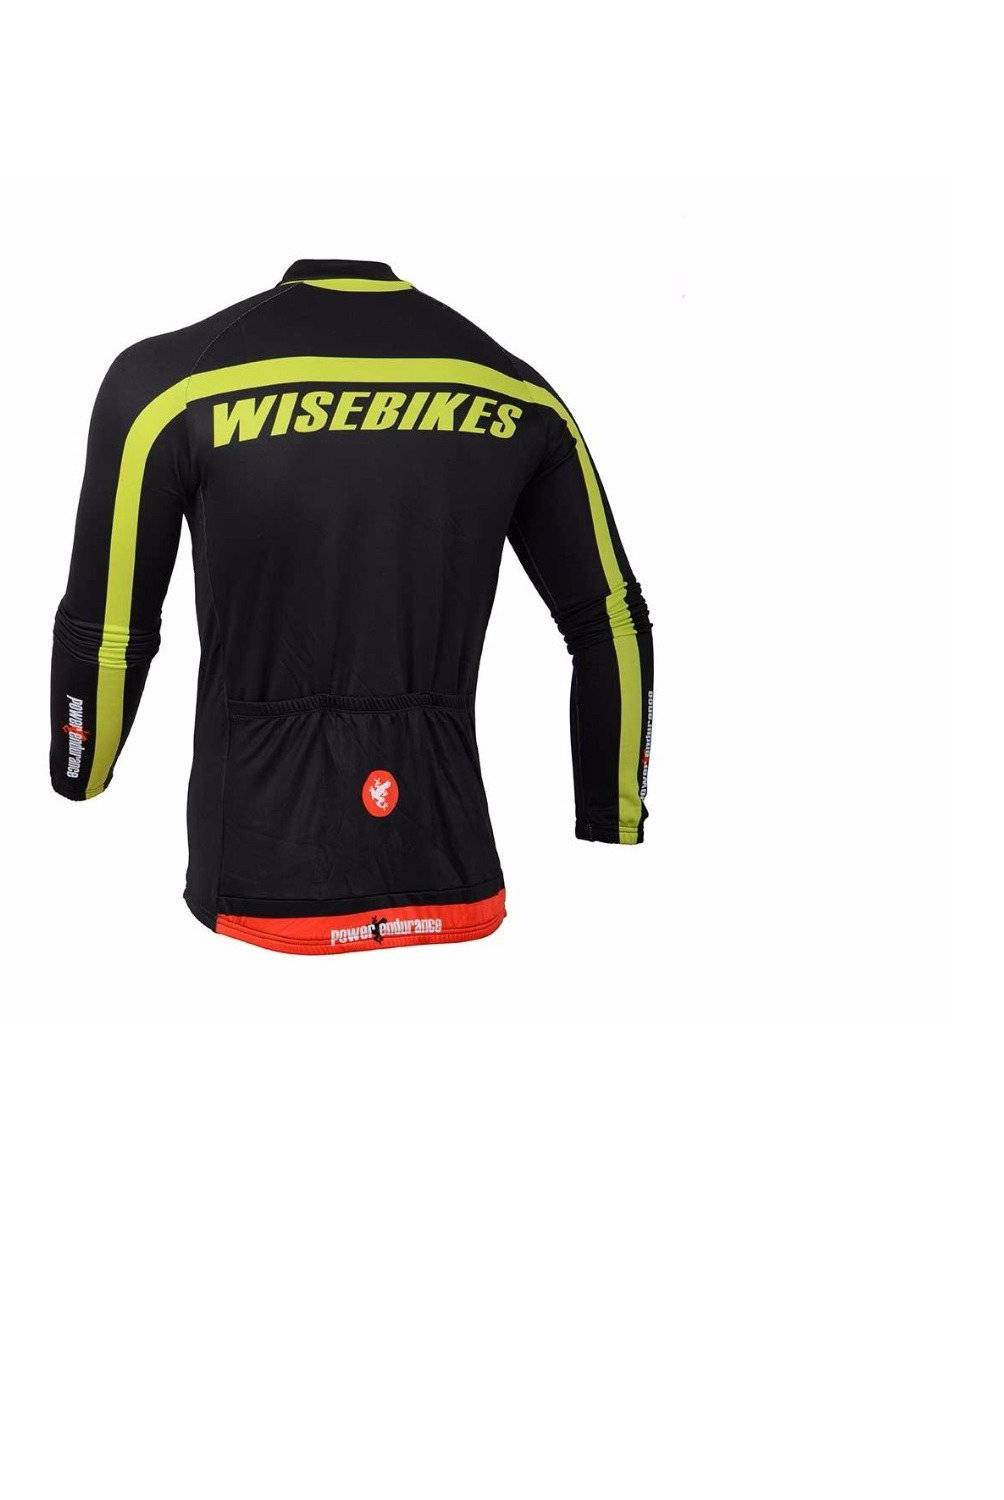 WISEBIKES - Chaquetilla Térmica de Ciclismo Wisebikes  Black